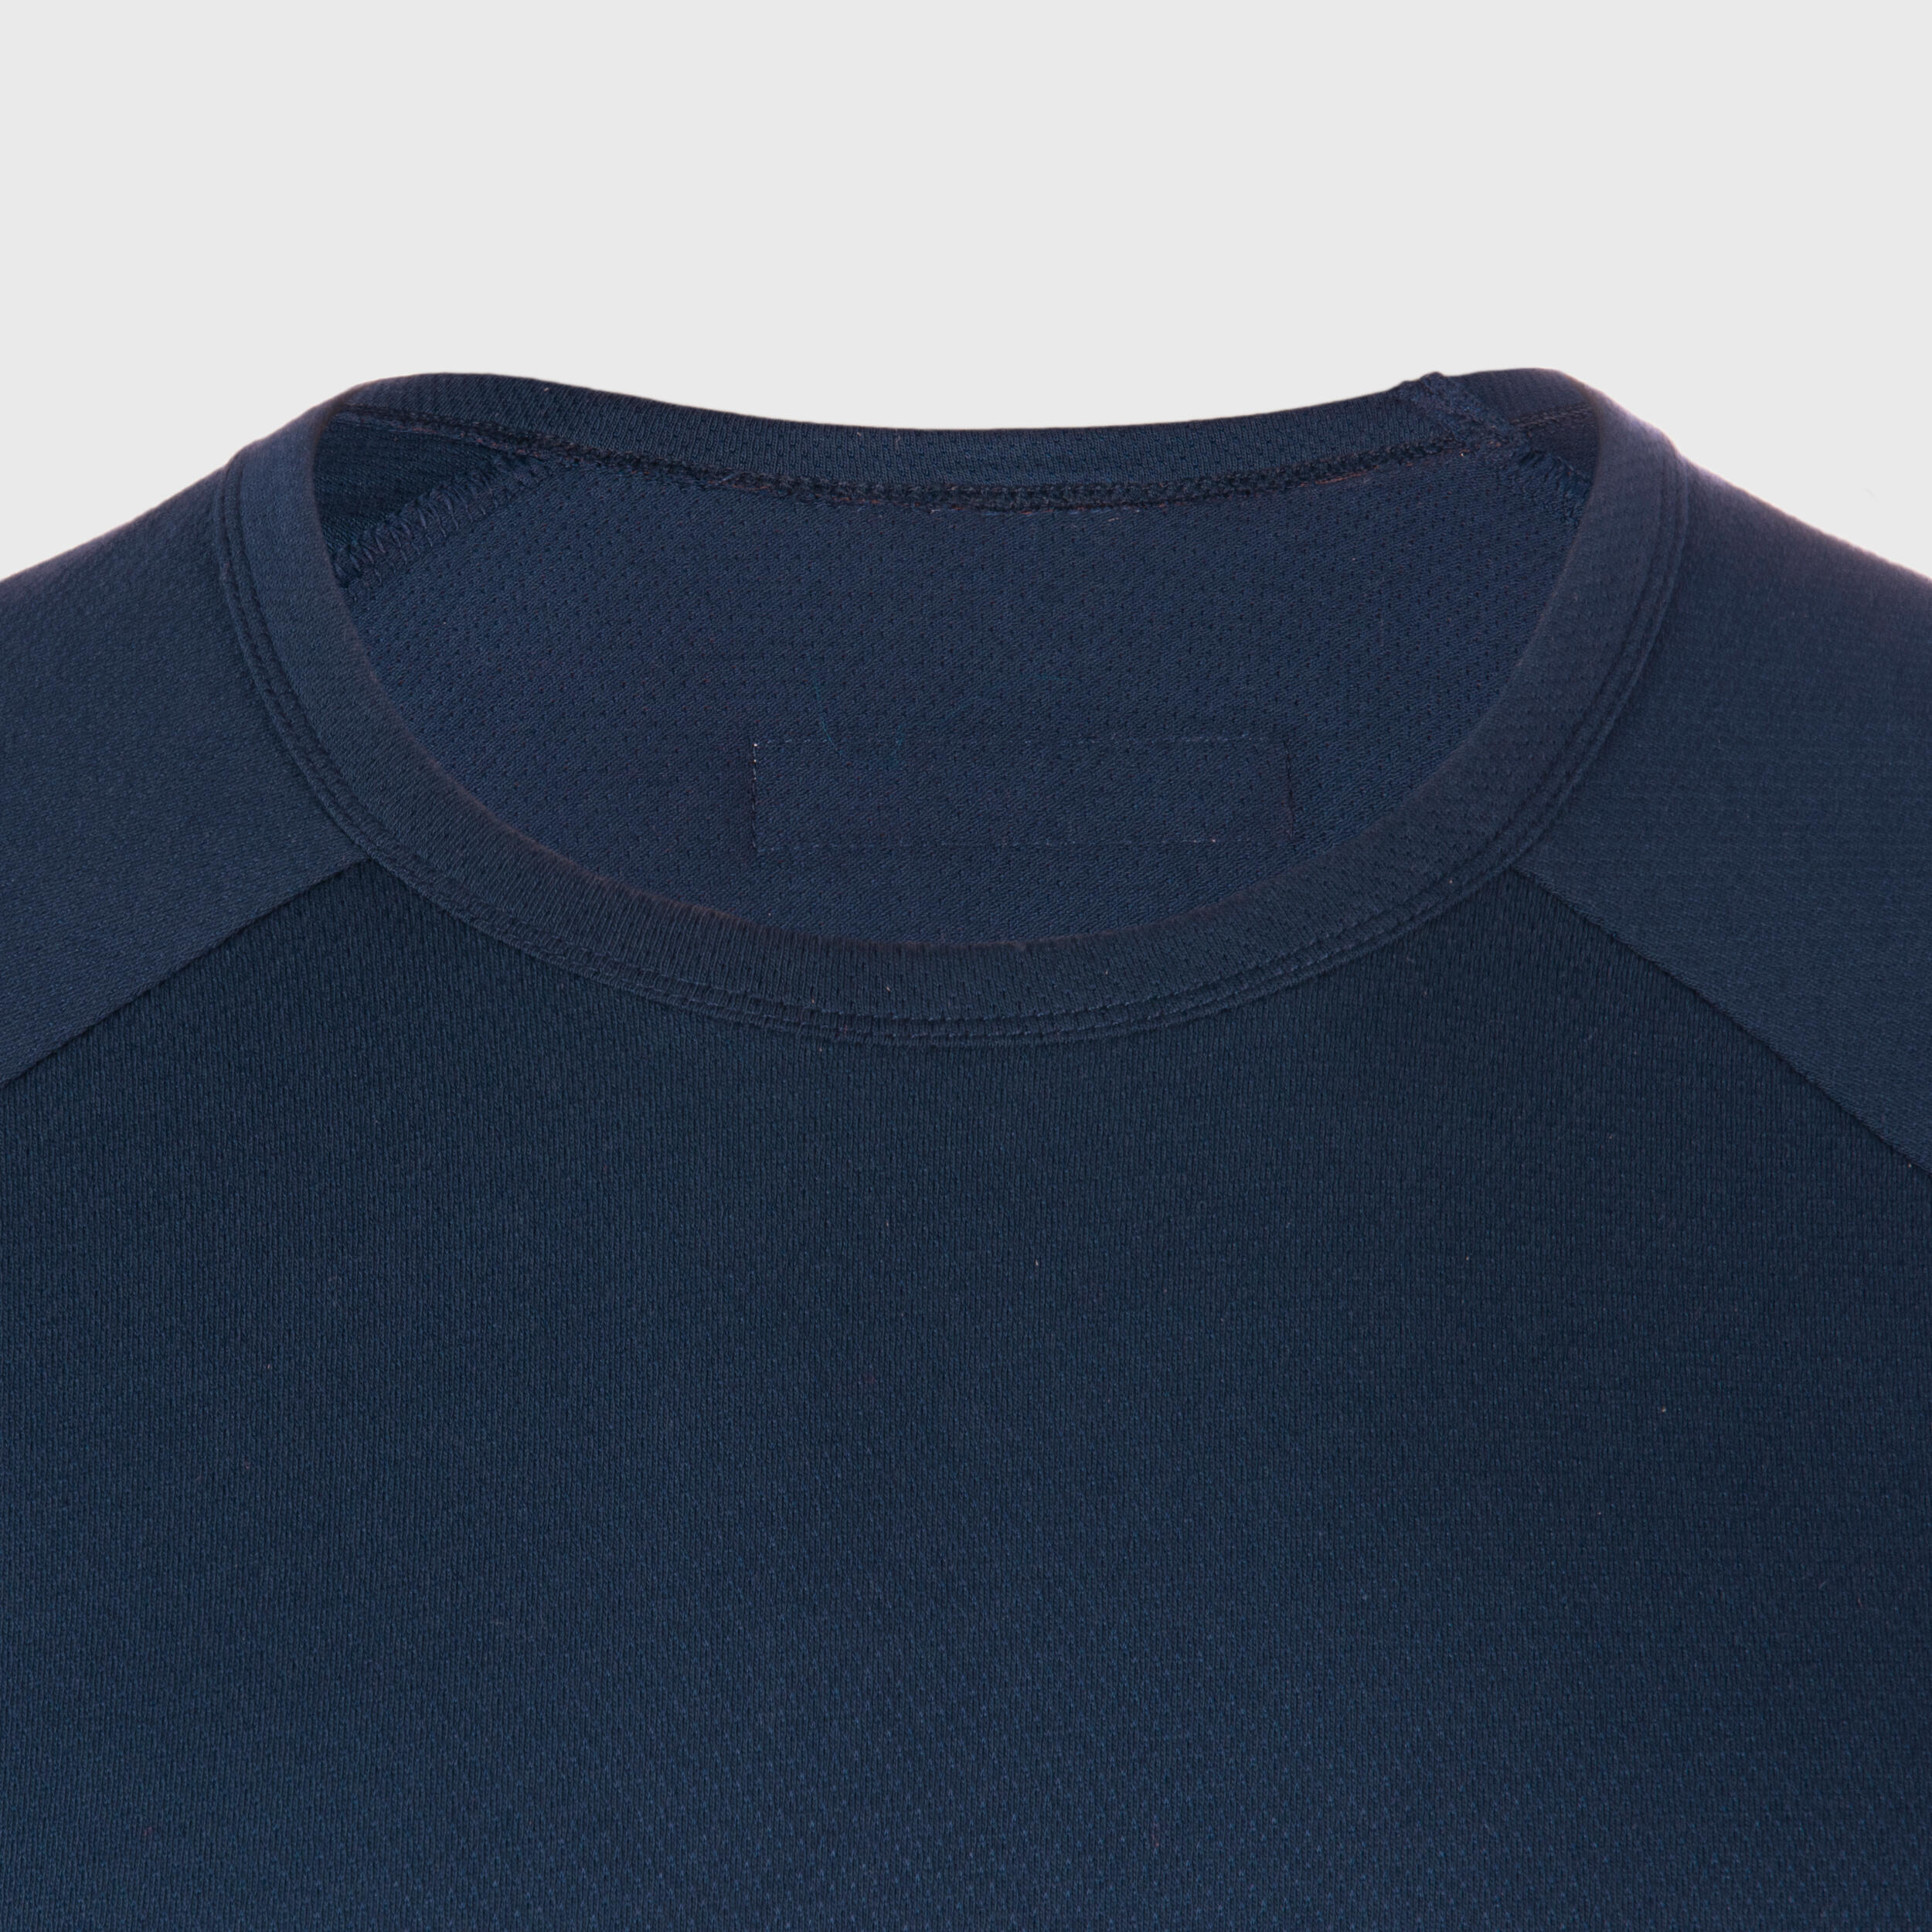 Men's/Women's Short-Sleeved T-Shirt R100 - France/Blue 3/7